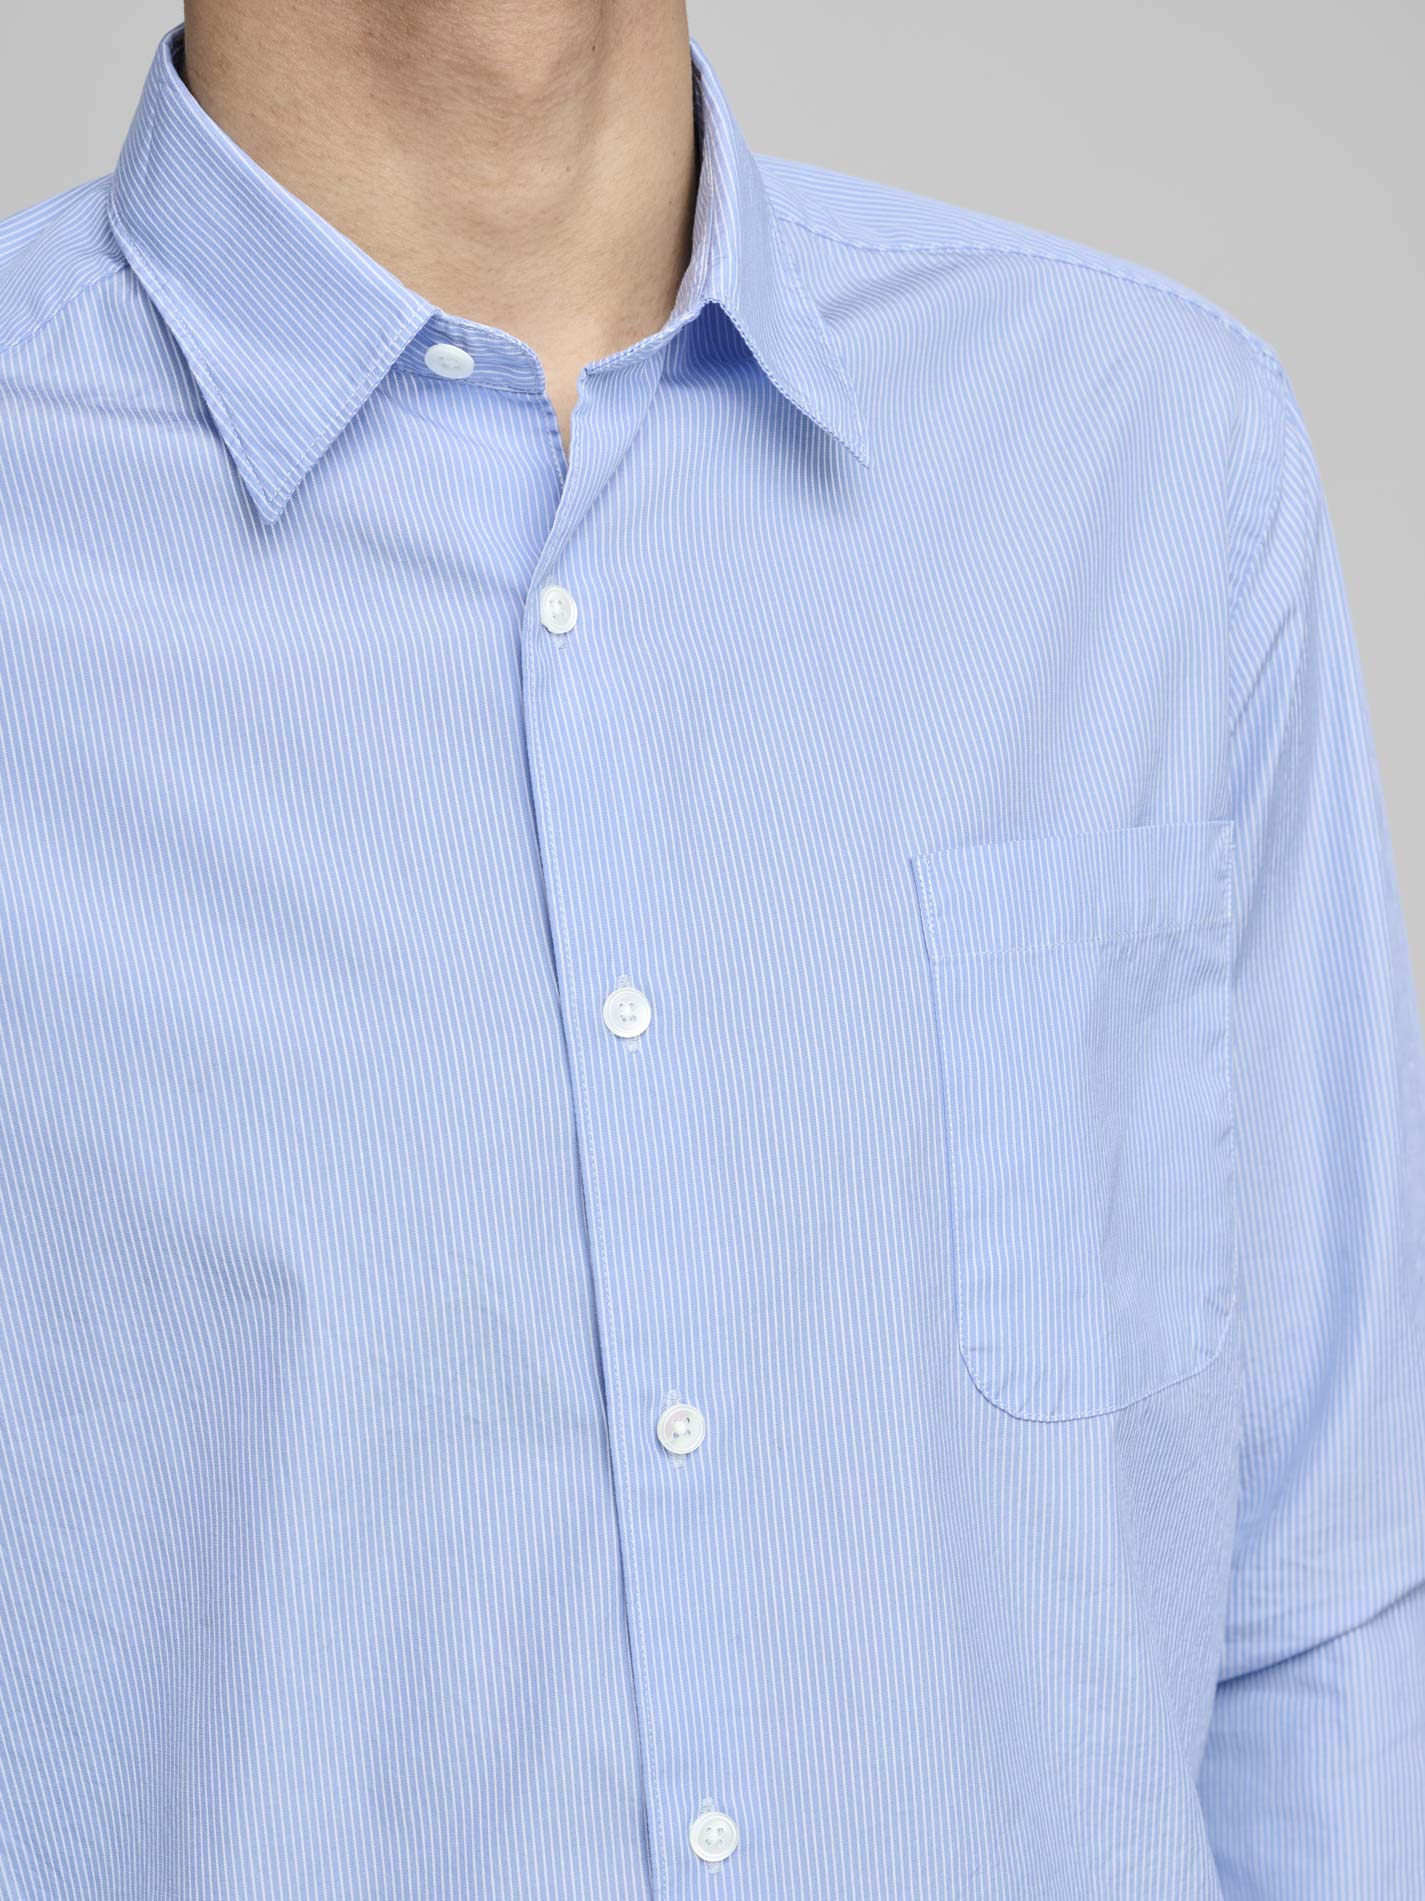 New Standard Shirt, Light blue / fine stripe